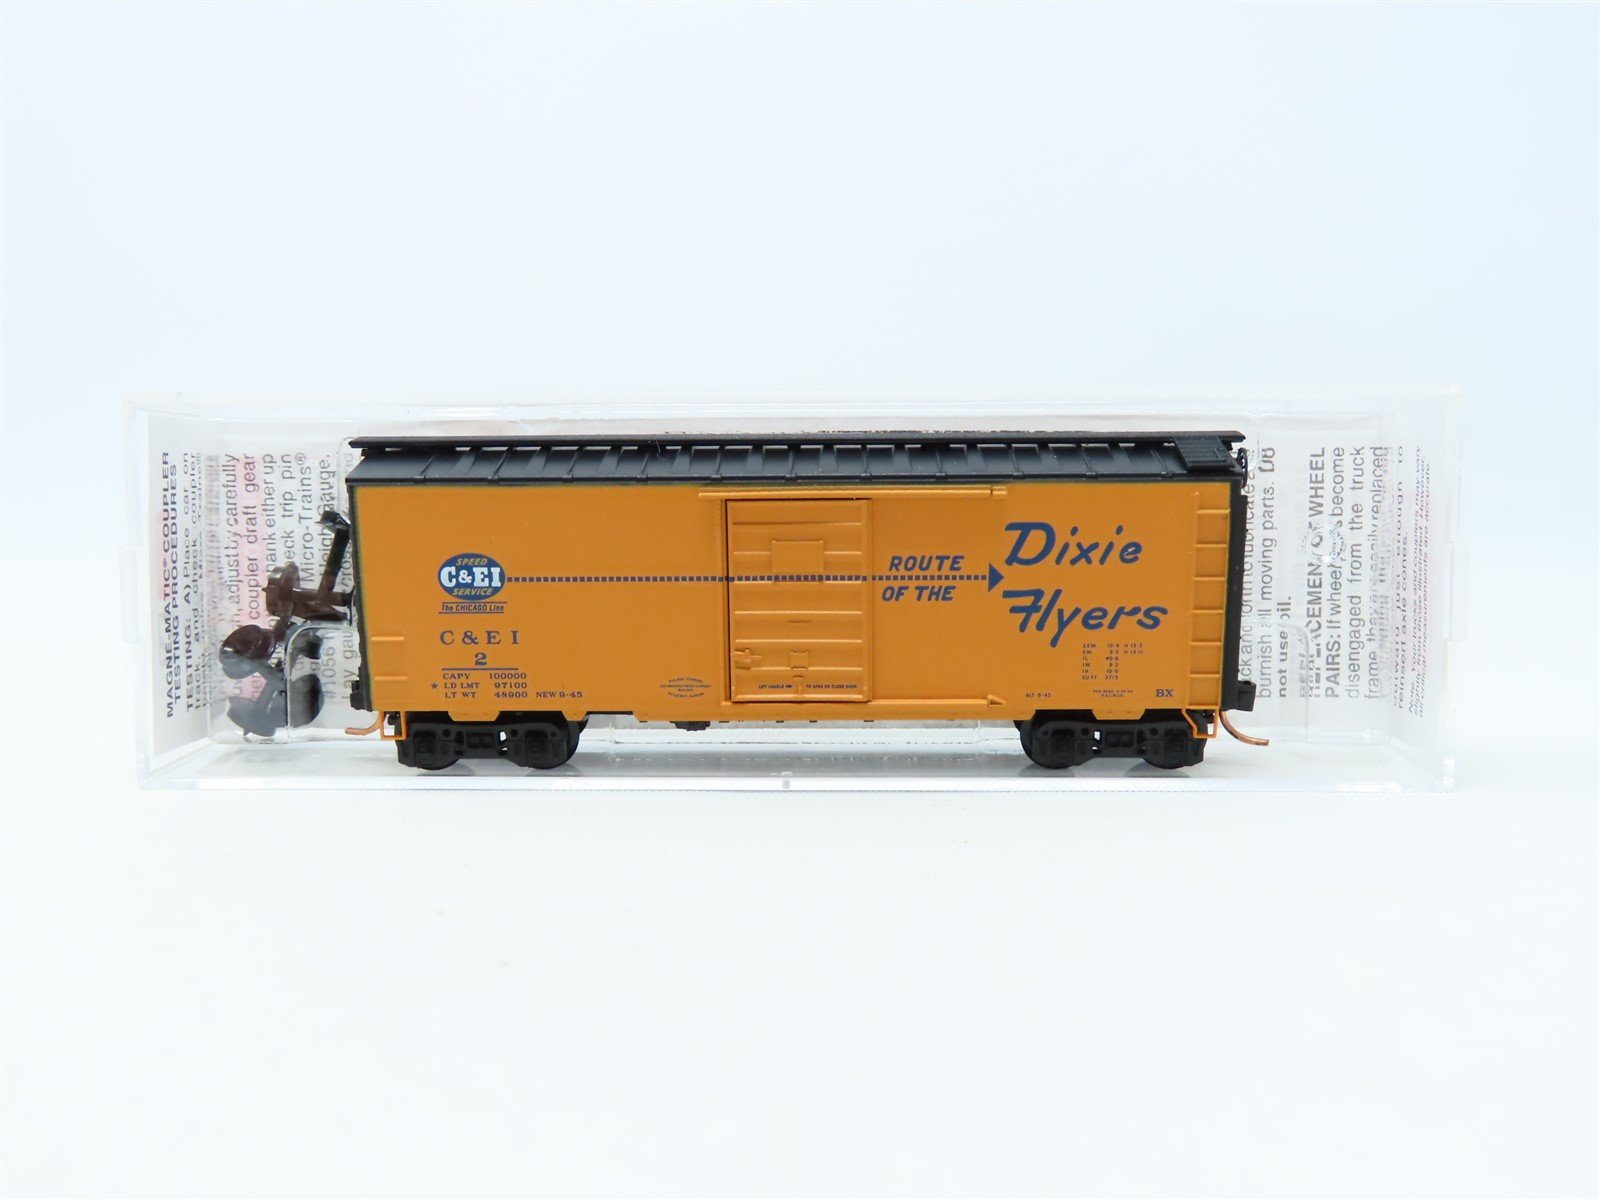 N Micro-Trains MTL #02000702 C&EI "Route Of The Dixie Flyers" 40' Box Car #2